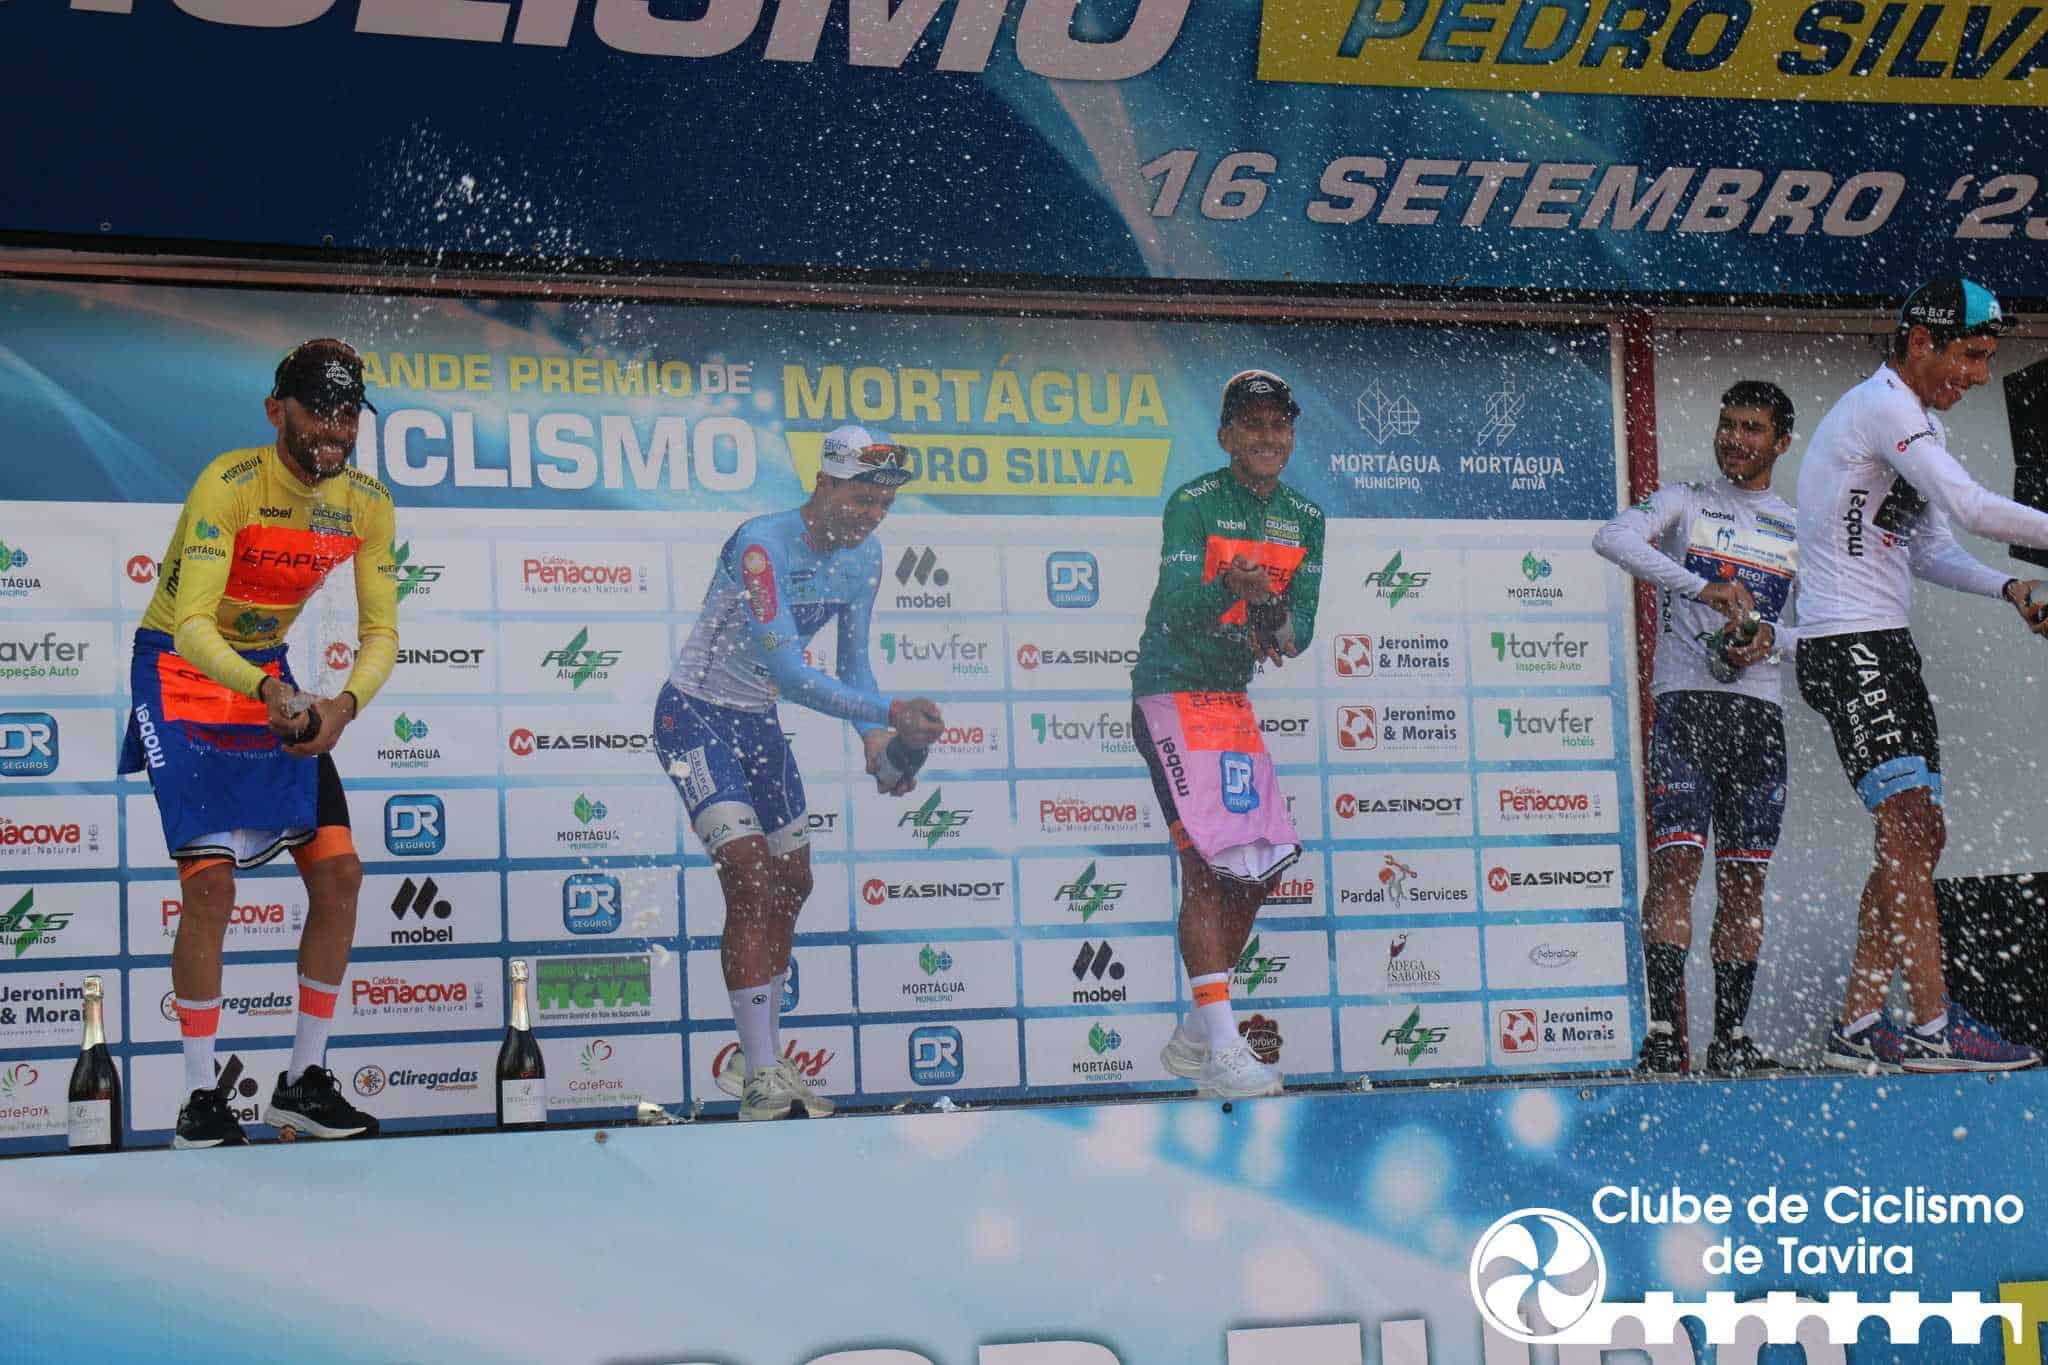 Clube Ciclismo de Tavira - 21º GP de Ciclismo de Mortágua - Pedro Silva5